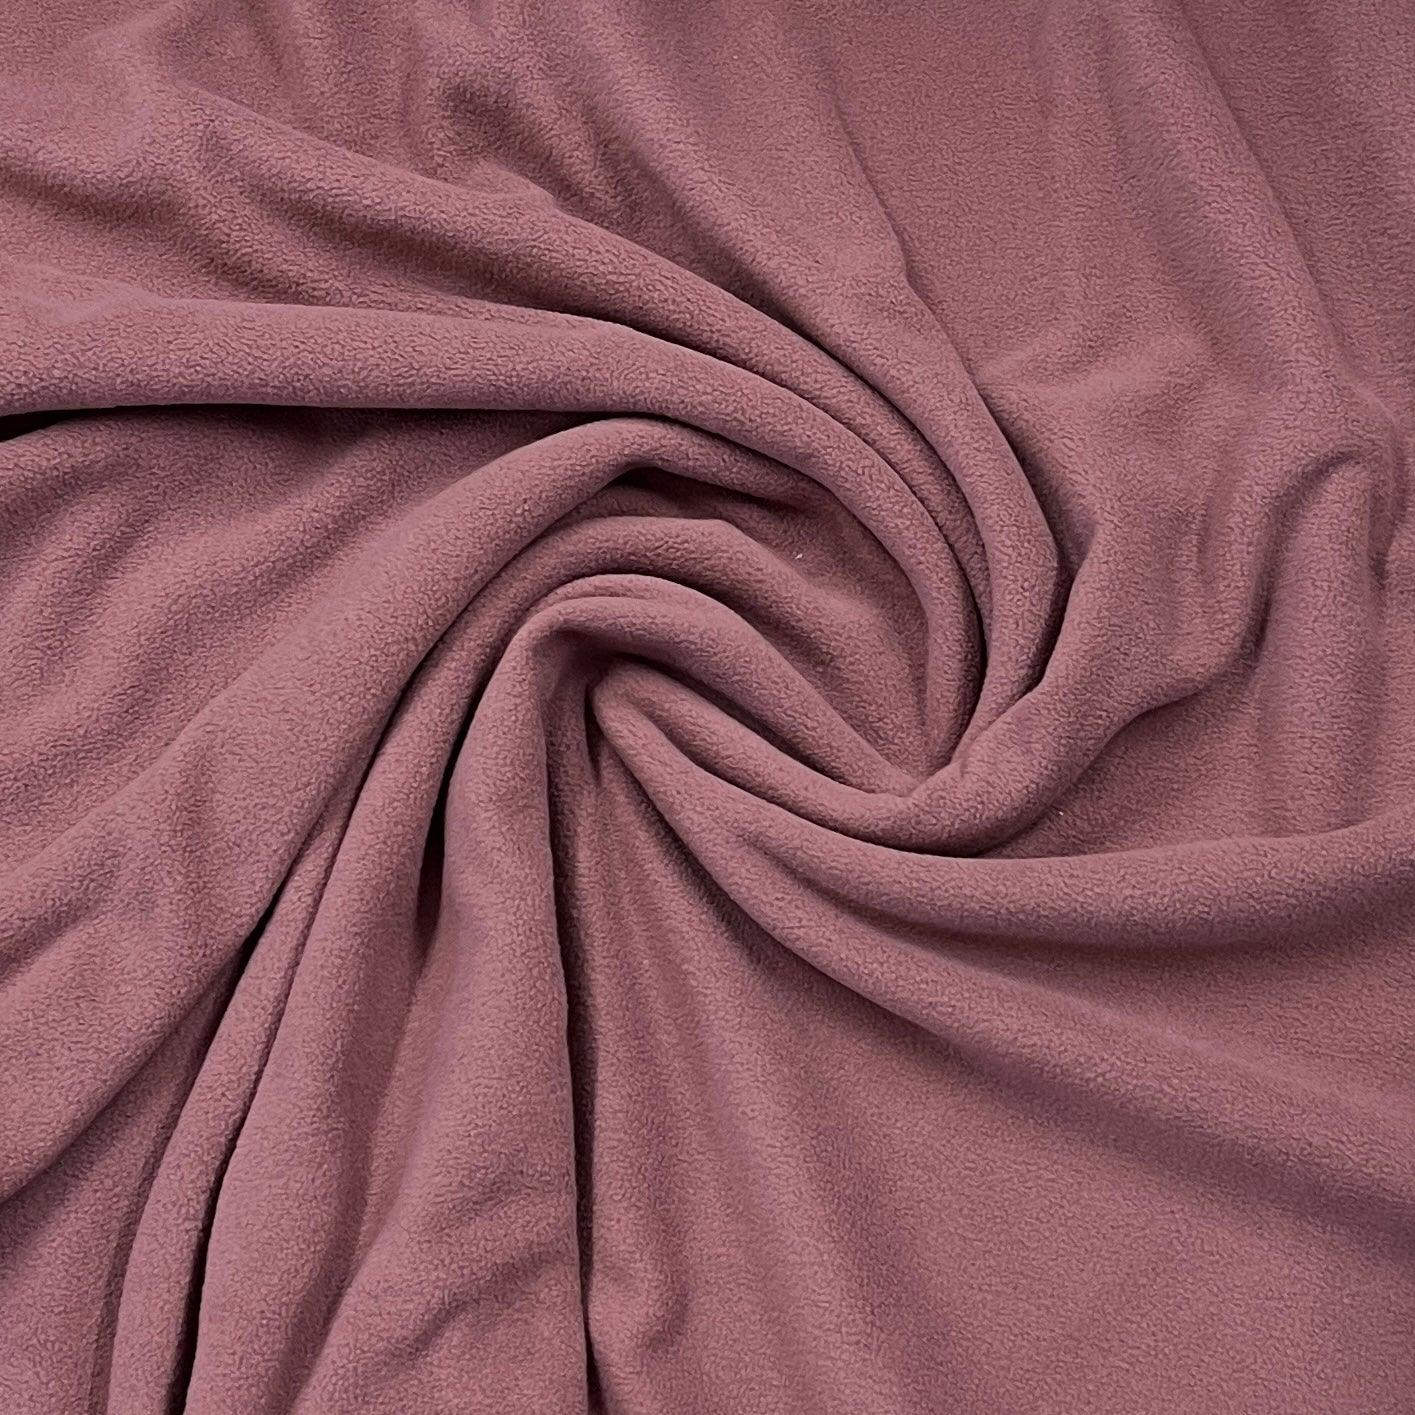 Rose Brown Microfleece Fabric - 250 GSM - Nature's Fabrics